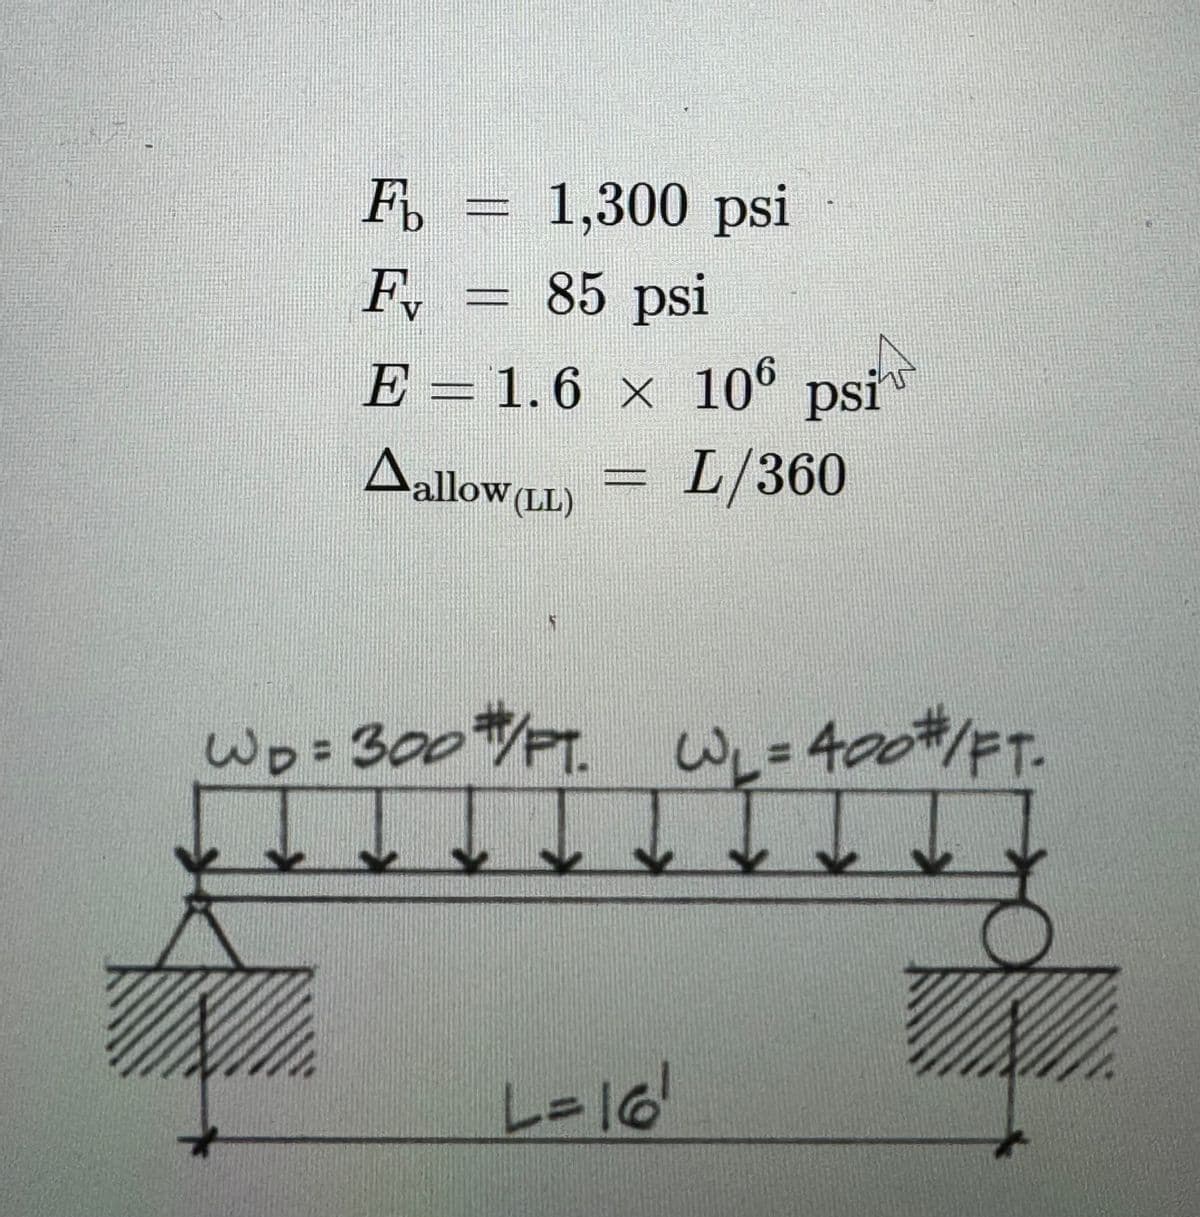 F%
1,300 psi
F₁ = 85 psi
V
E = 1.6 × 106 psi
Aallow (LL)
L/360
WD=300#/PT. W₁ = 400#/FT.
III
L=16'
F1